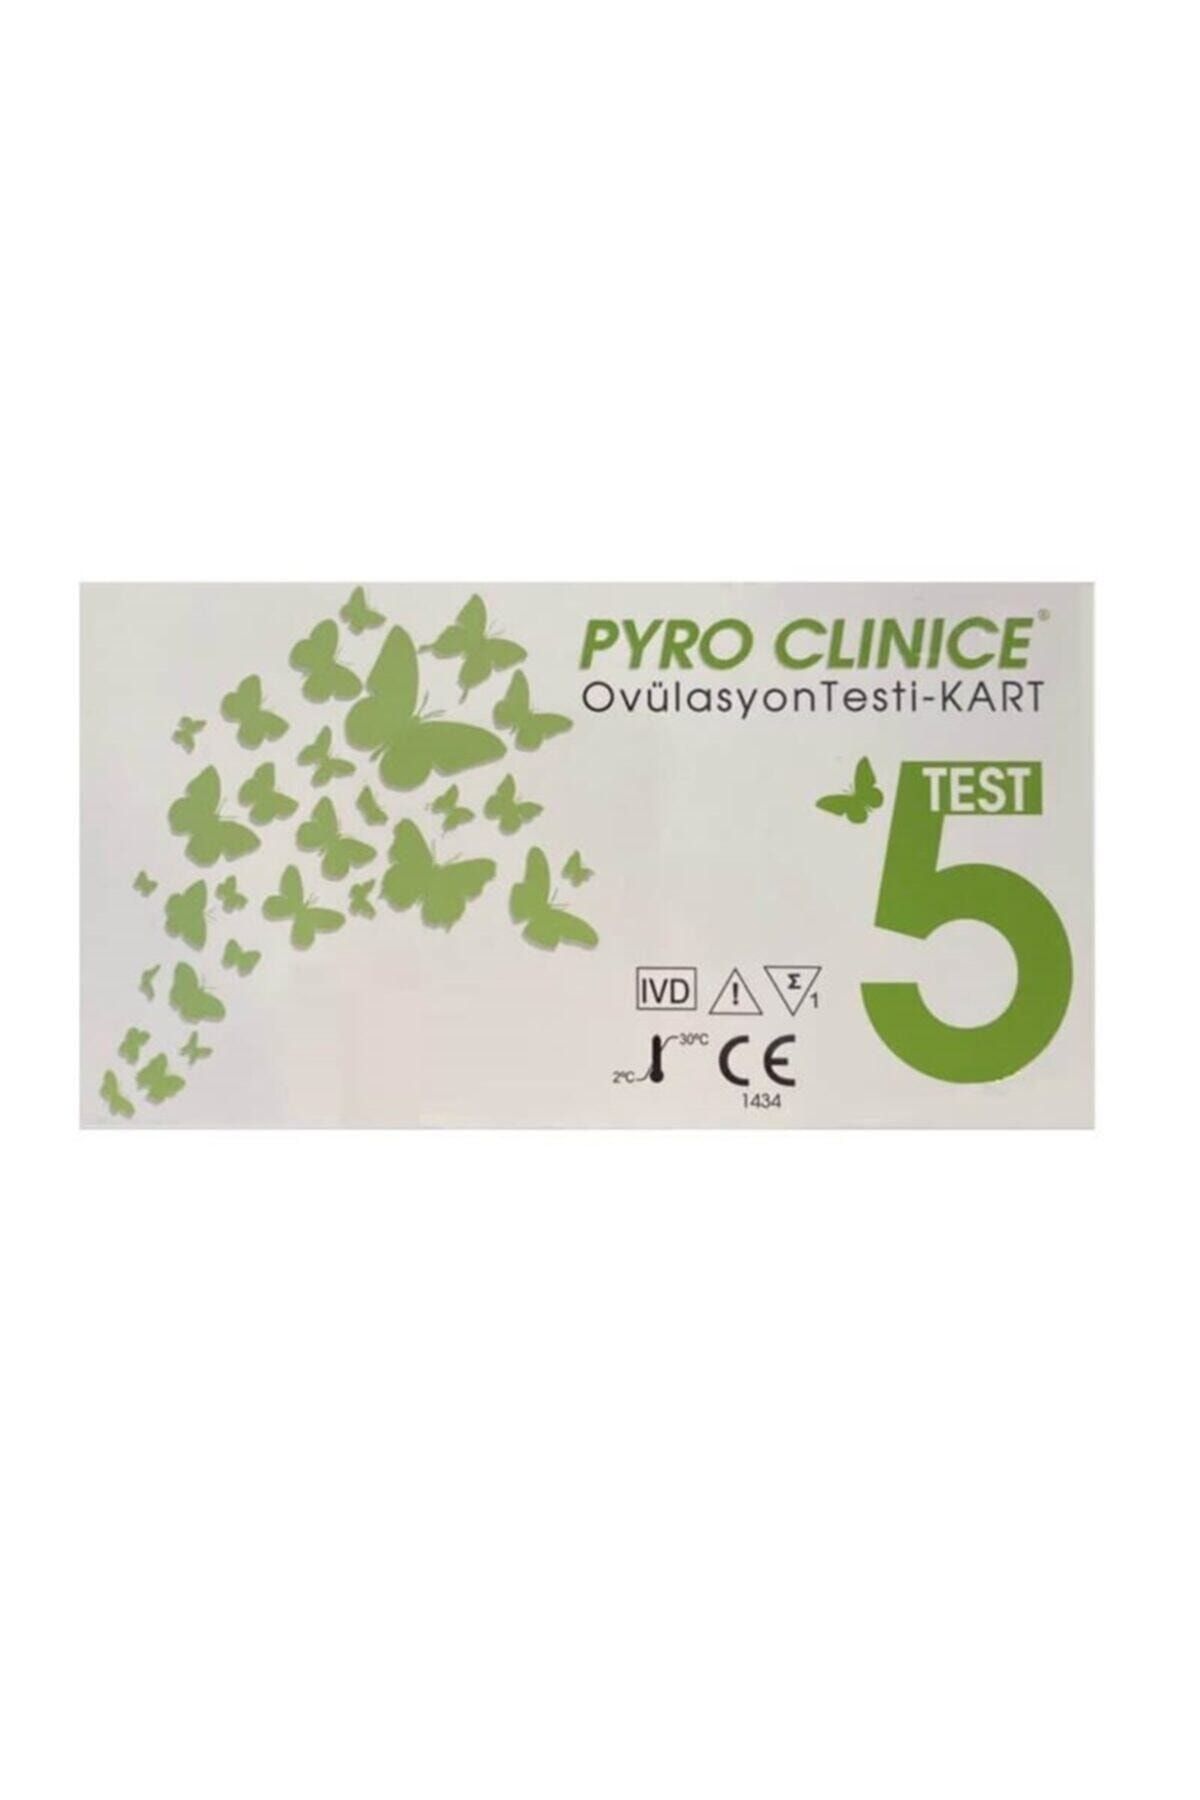 Prodoctor Pyro Clınıce Ovulasyon Testi 5'li Bıocen